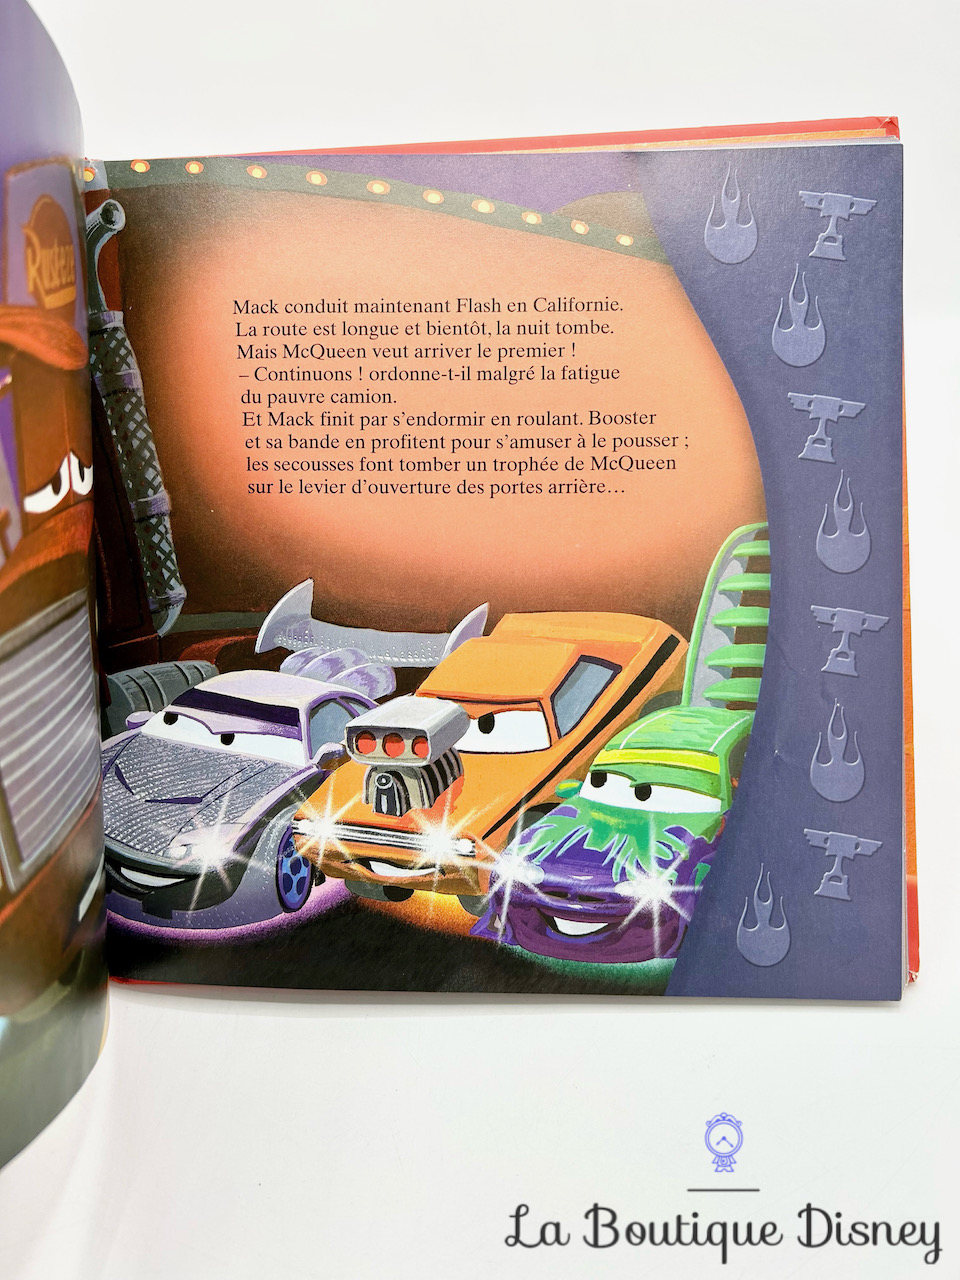 Livre : Cars 3 écrit par Disney.Pixar - Hachette jeunesse-Disney